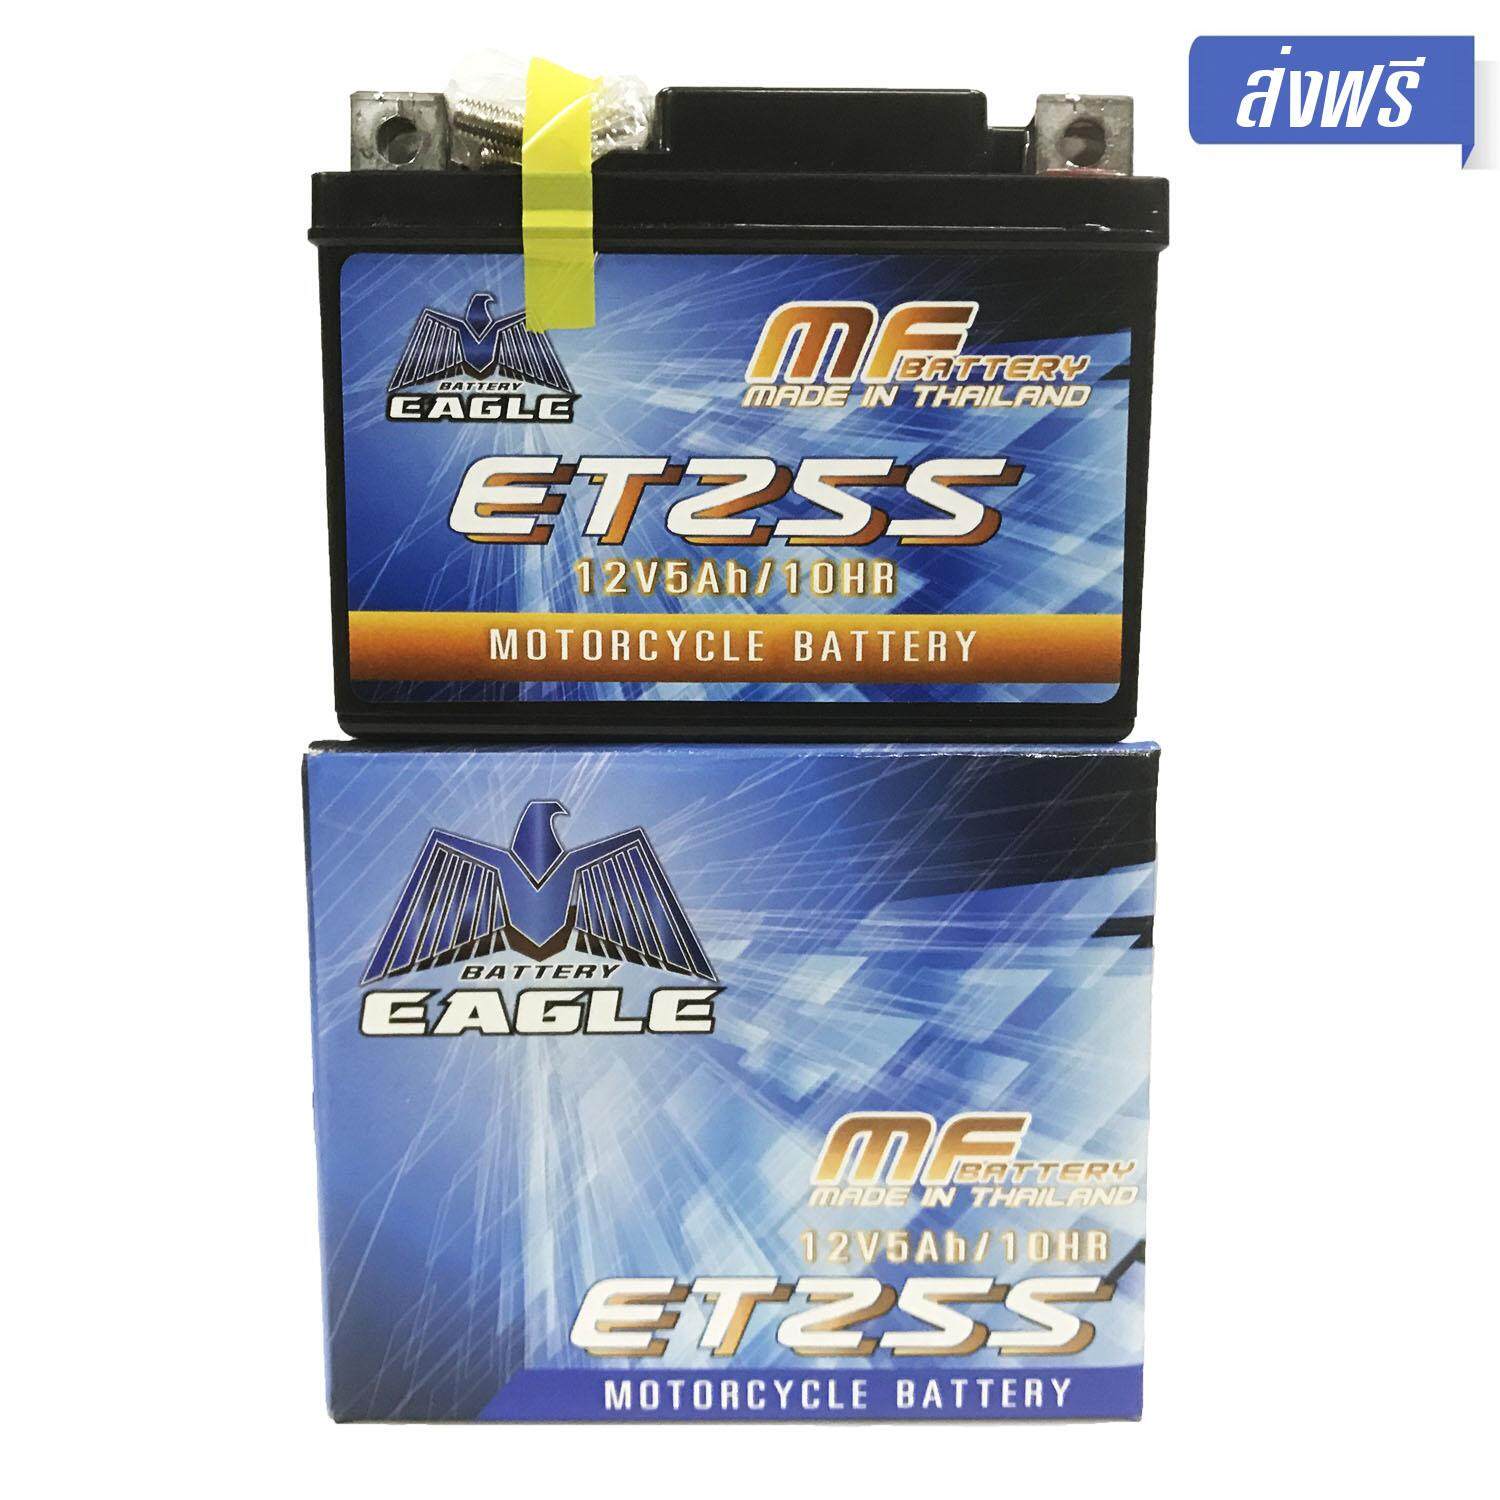 [ส่งฟรี] EAGLE แบตเตอรี่แห้ง ETZ-5S (5 แอมป์) สำหรับมอเตอร์ไซค์ ใช้กับจักรยานยนต์สตาร์ทมือได้